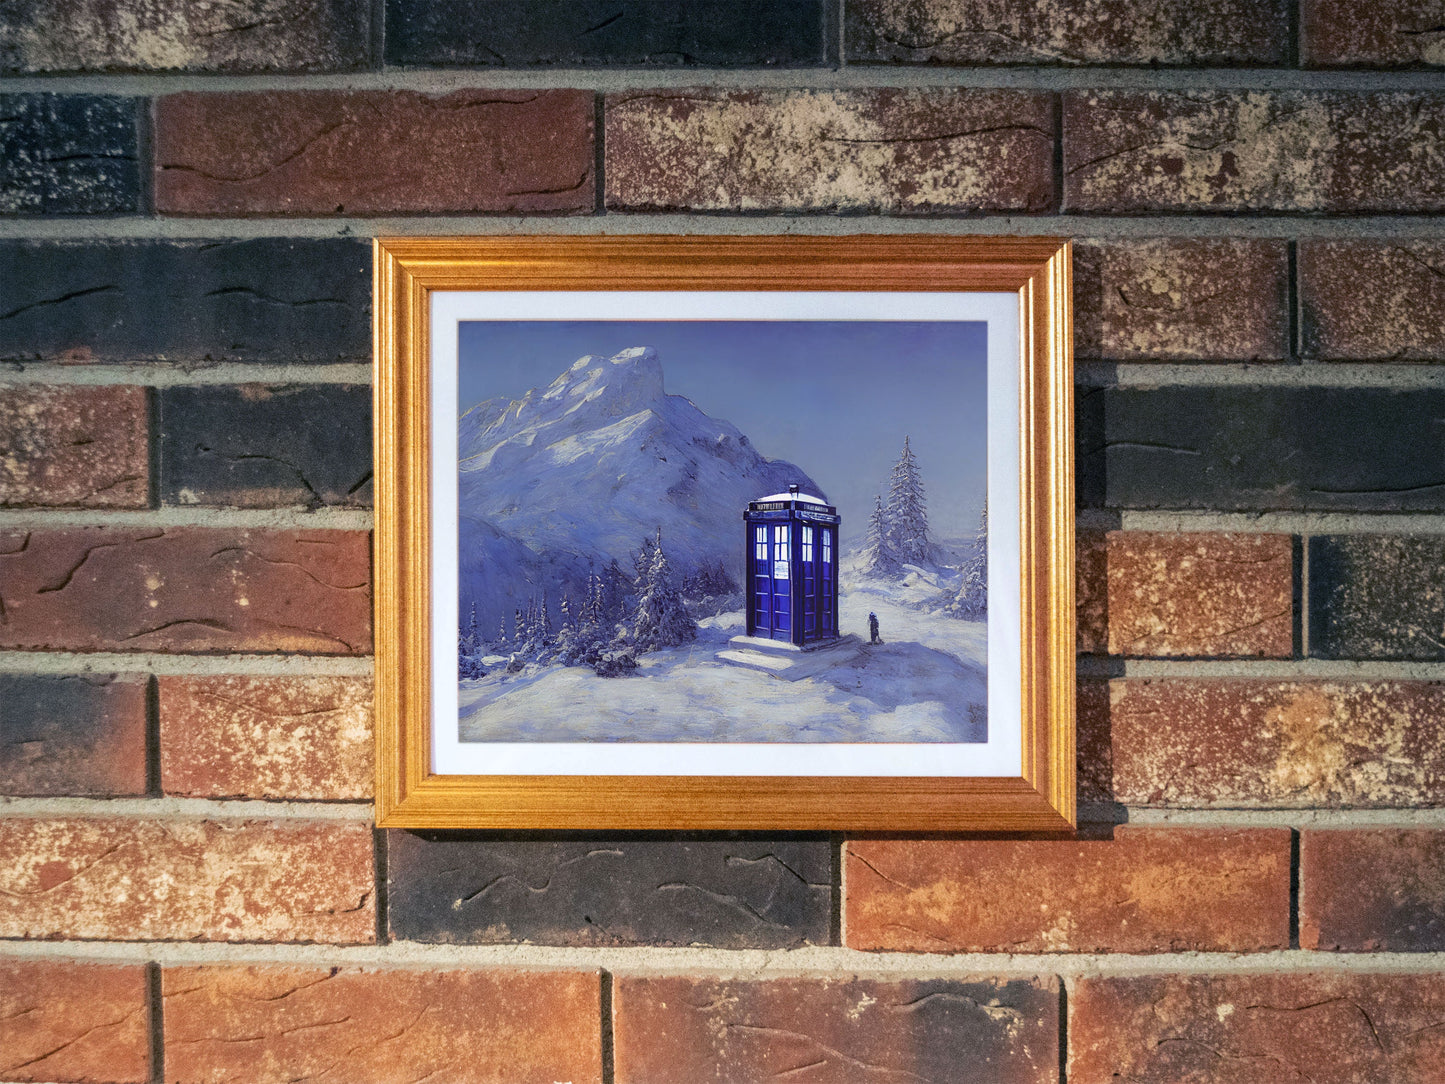 TARDIS on a Snowy Mountain